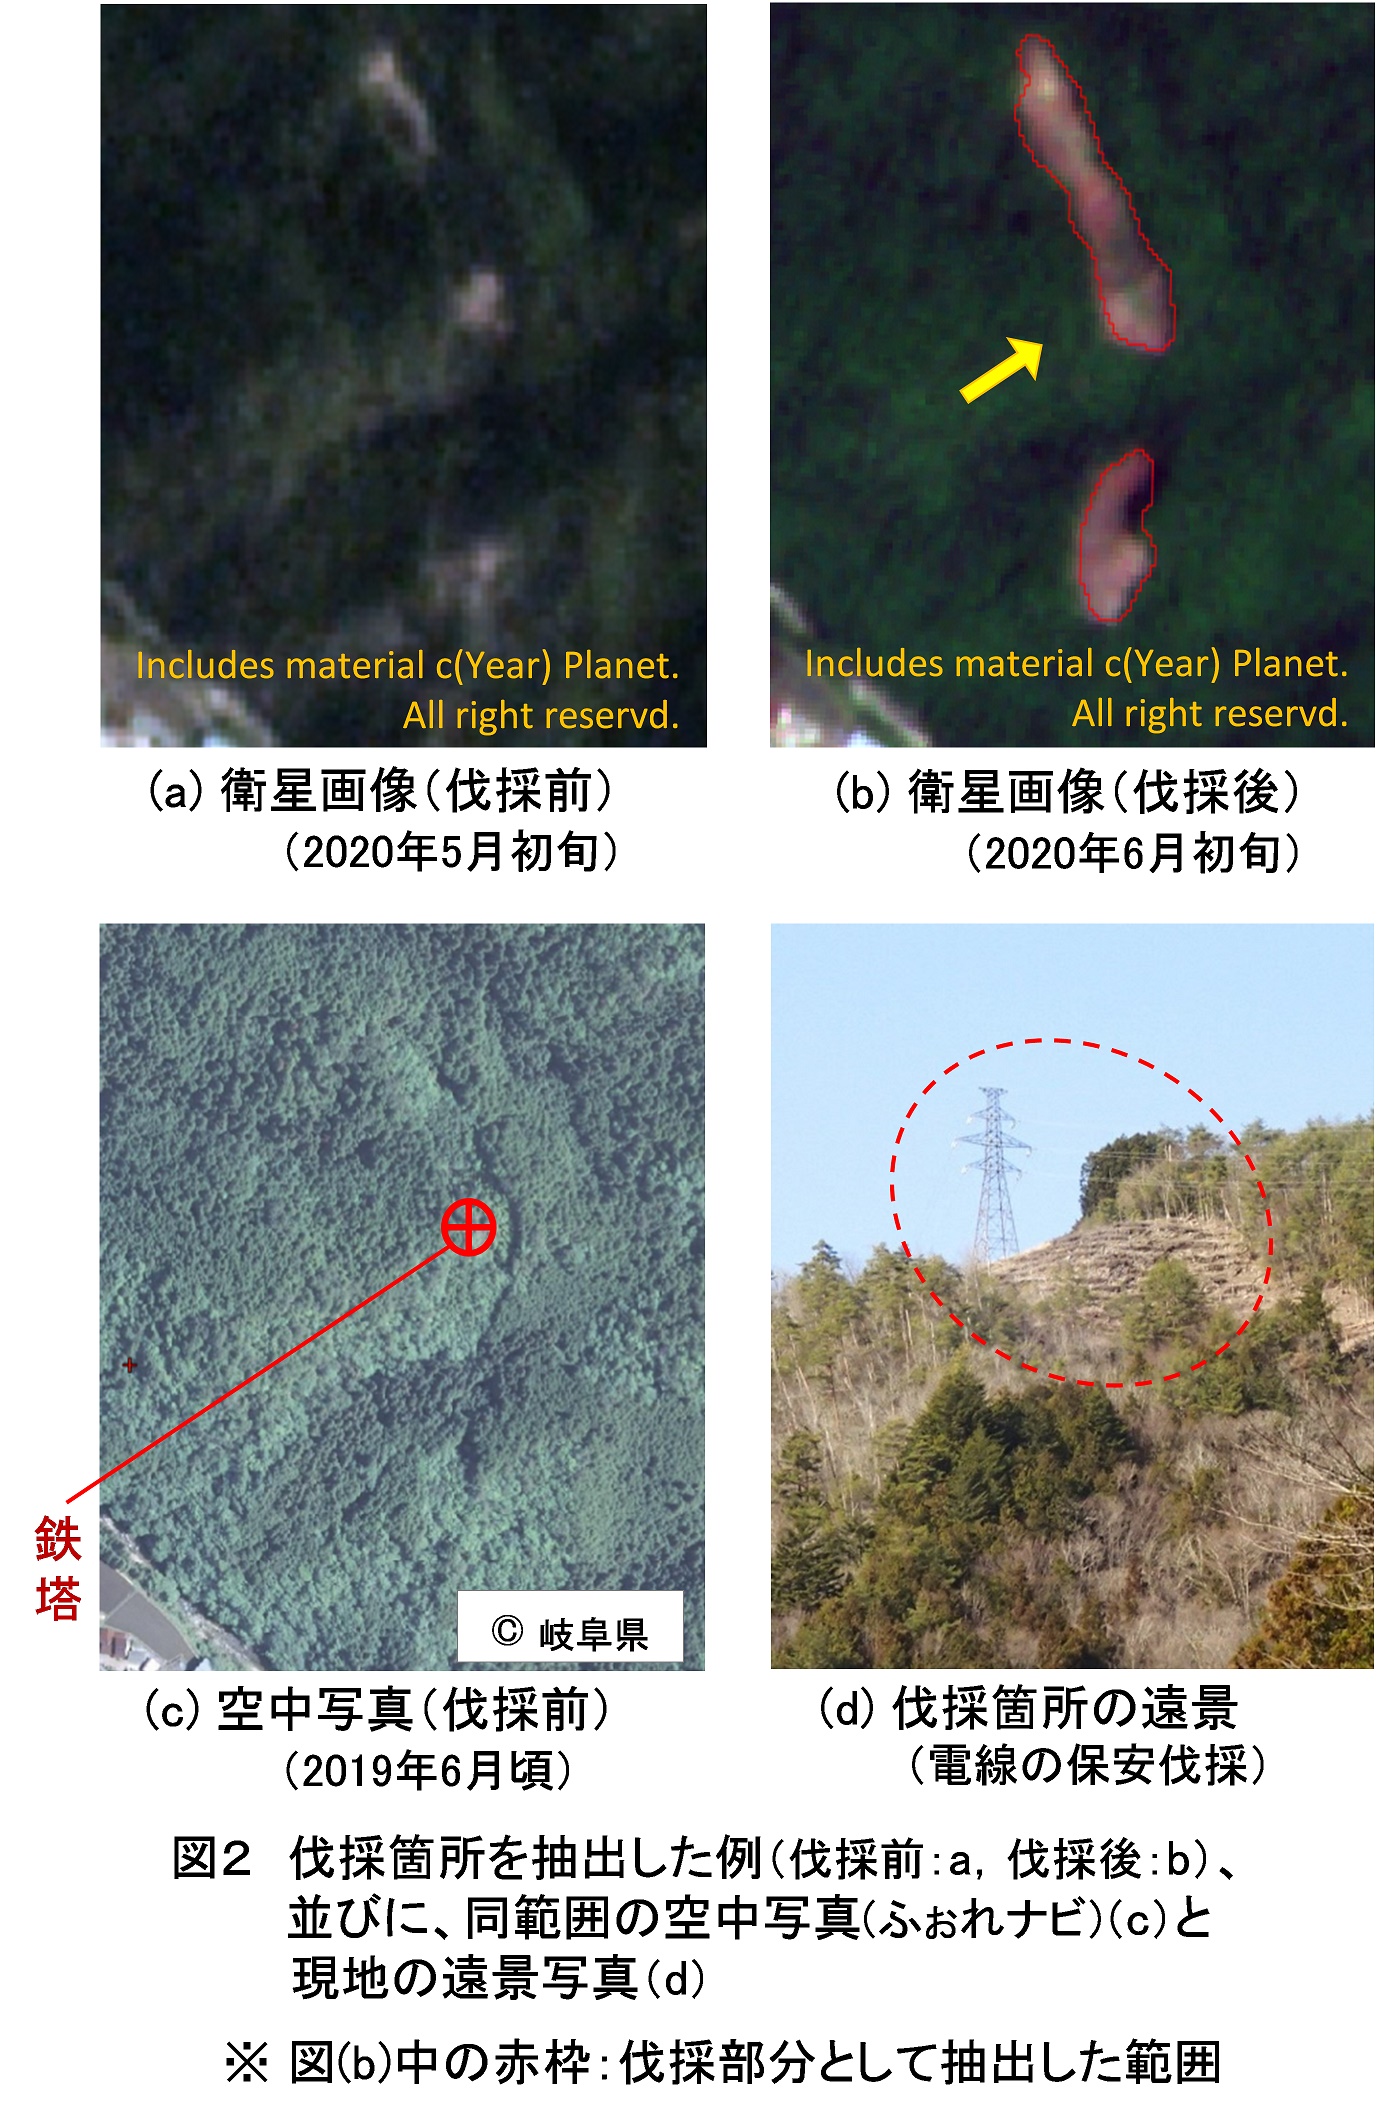 図2　伐採箇所を抽出した例（伐採前:a, 伐採後:b）、並びに、同範囲の空中写真（ふぉれナビ）（c）と現地の遠景写真